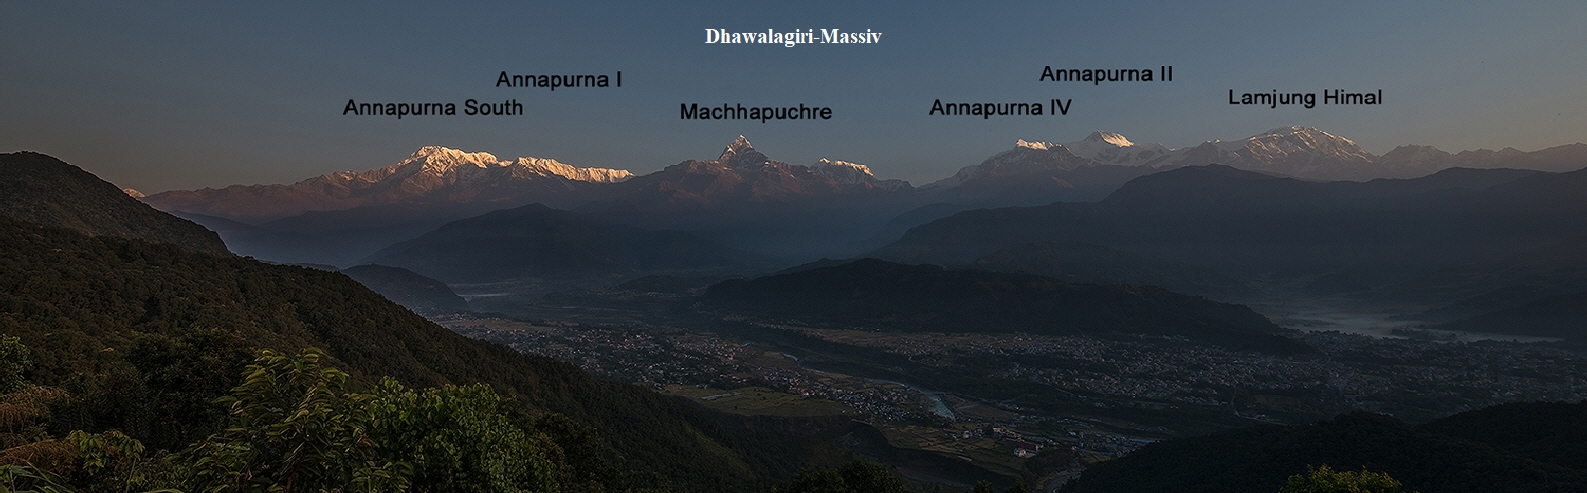 Dhawalagiri-Massiv2